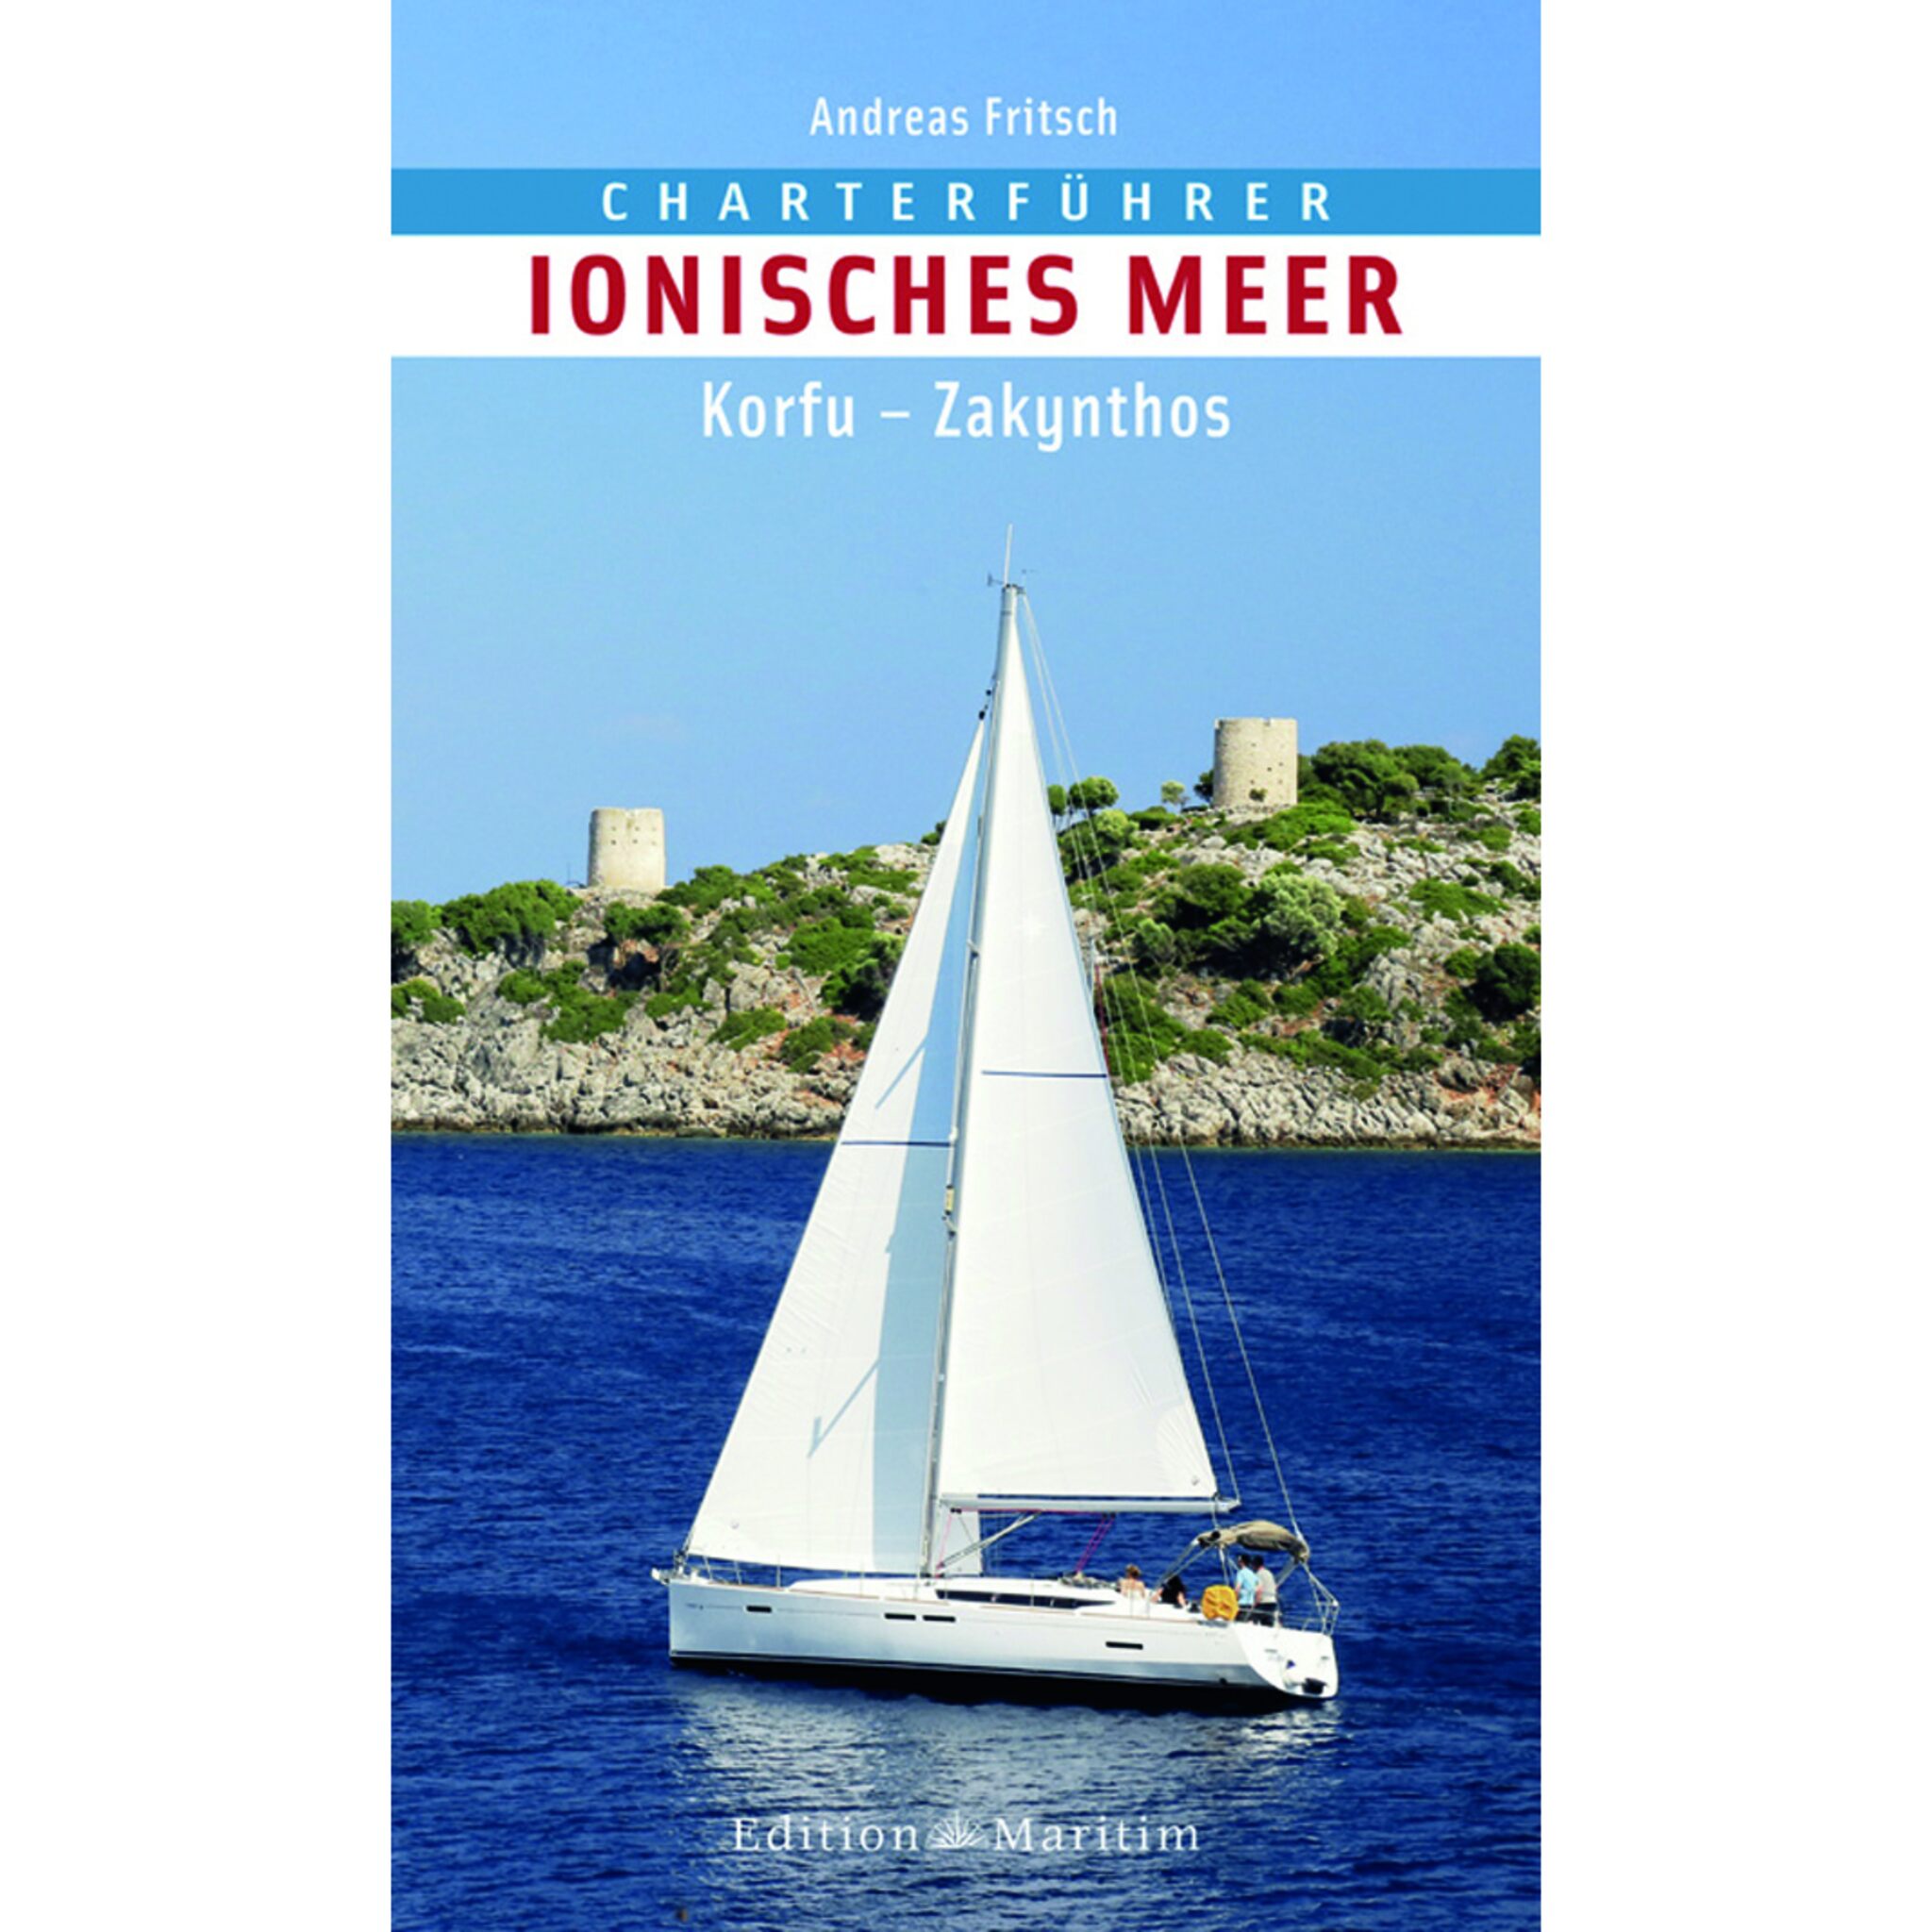 Delius Klasing Charterführer Ionisches Meer